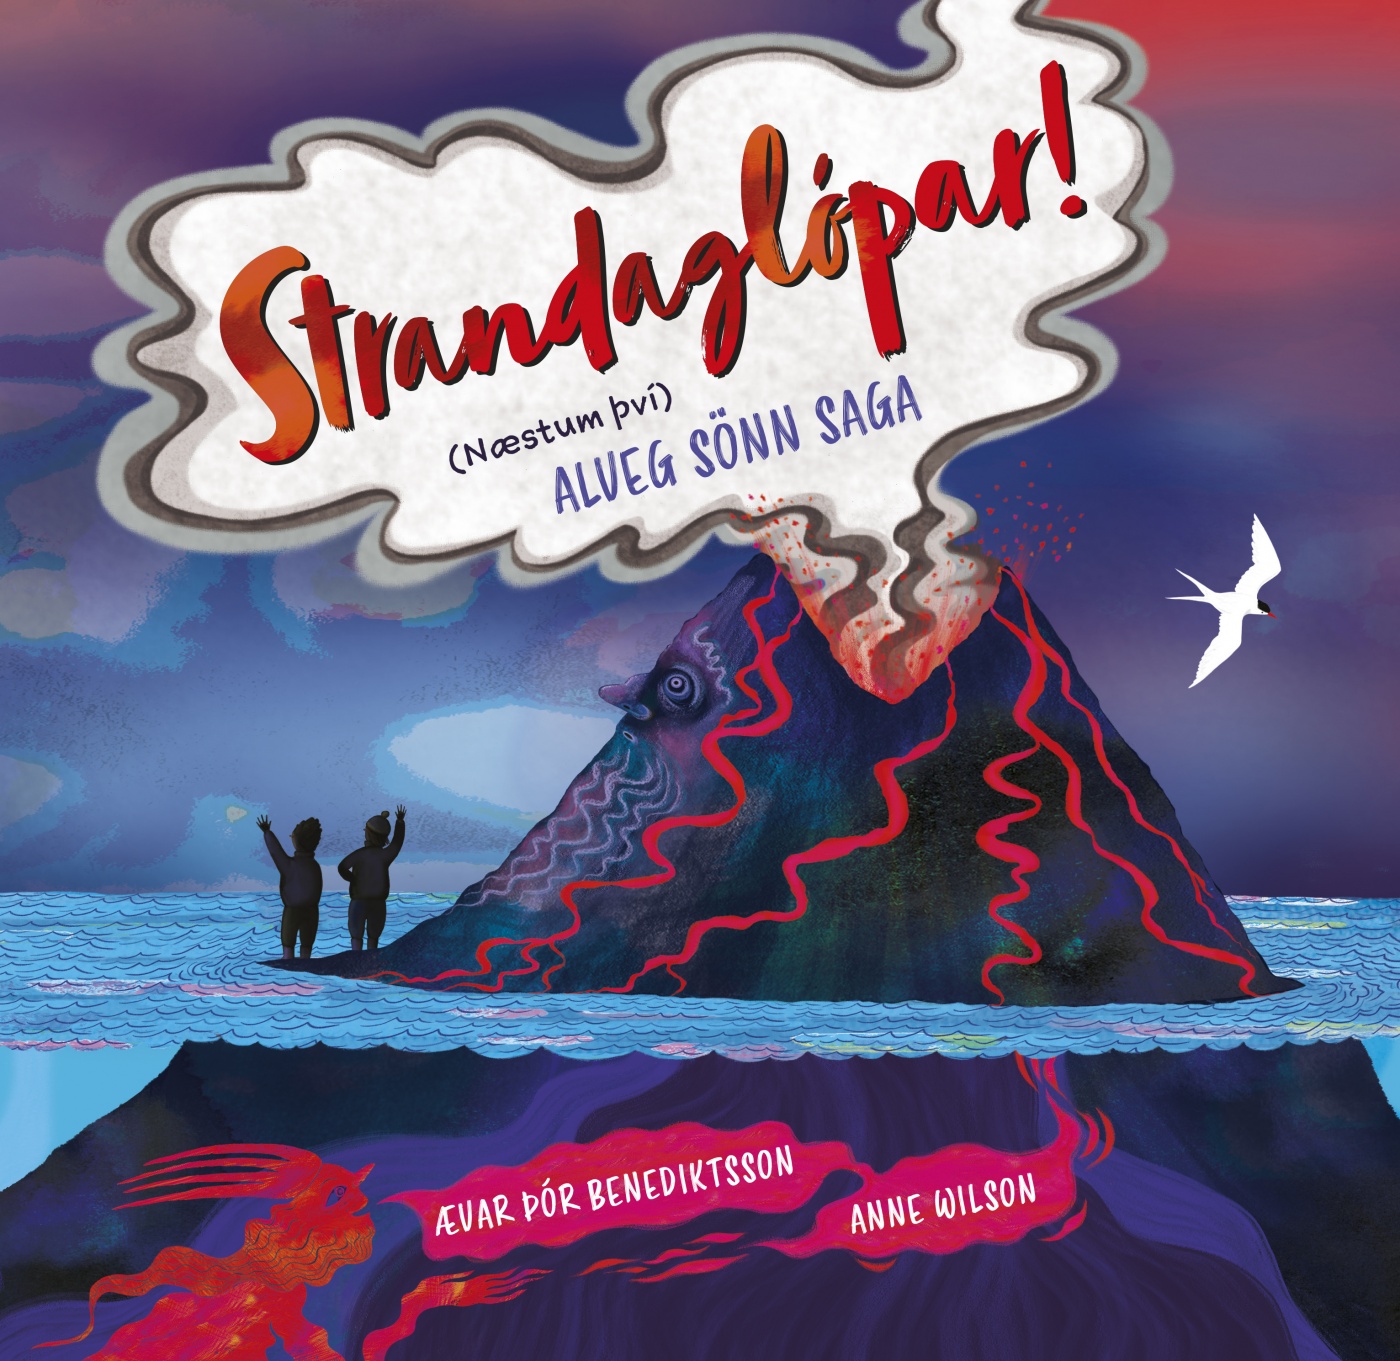 Strandaglópar! (næstum því) sönn saga (Stranded! A Mostly True Story from Iceland)